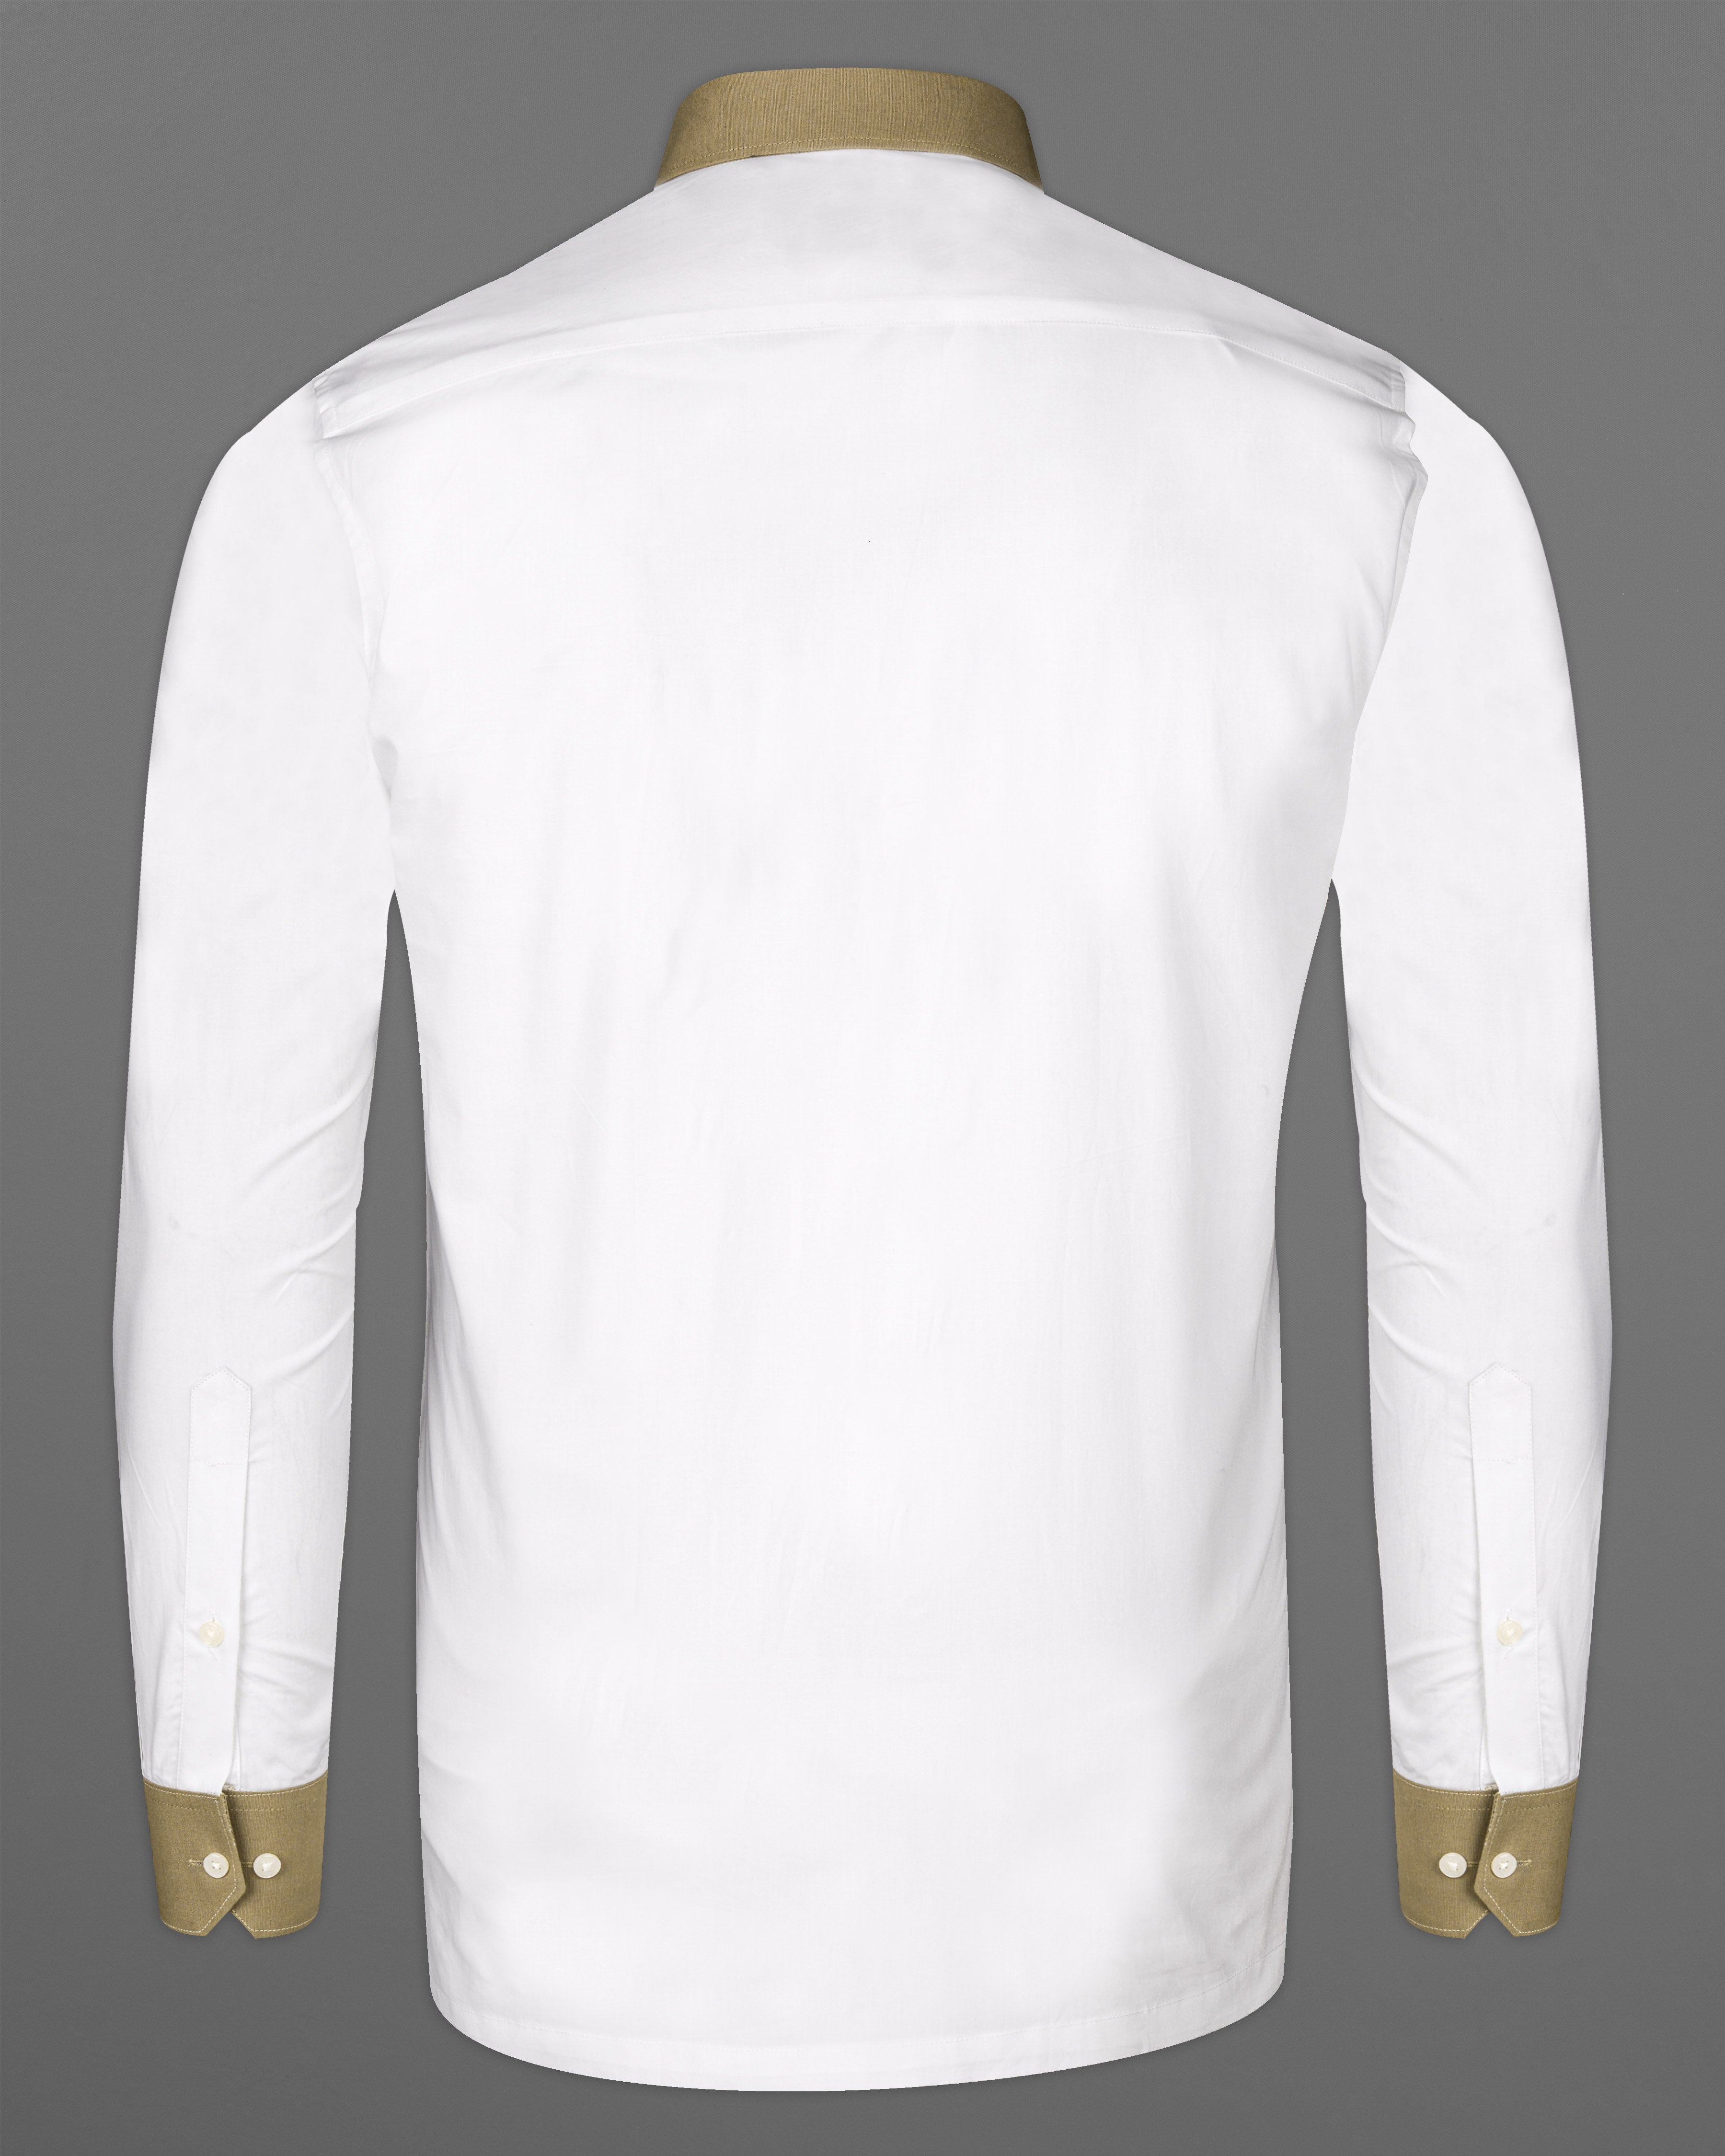 Bright White And Brown Cuff and Collar Premium Cotton Designer Shirt 9746-P220-38, 9746-P220-H-38, 9746-P220-39, 9746-P220-H-39, 9746-P220-40, 9746-P220-H-40, 9746-P220-42, 9746-P220-H-42, 9746-P220-44, 9746-P220-H-44, 9746-P220-46, 9746-P220-H-46, 9746-P220-48, 9746-P220-H-48, 9746-P220-50, 9746-P220-H-50, 9746-P220-52, 9746-P220-H-52